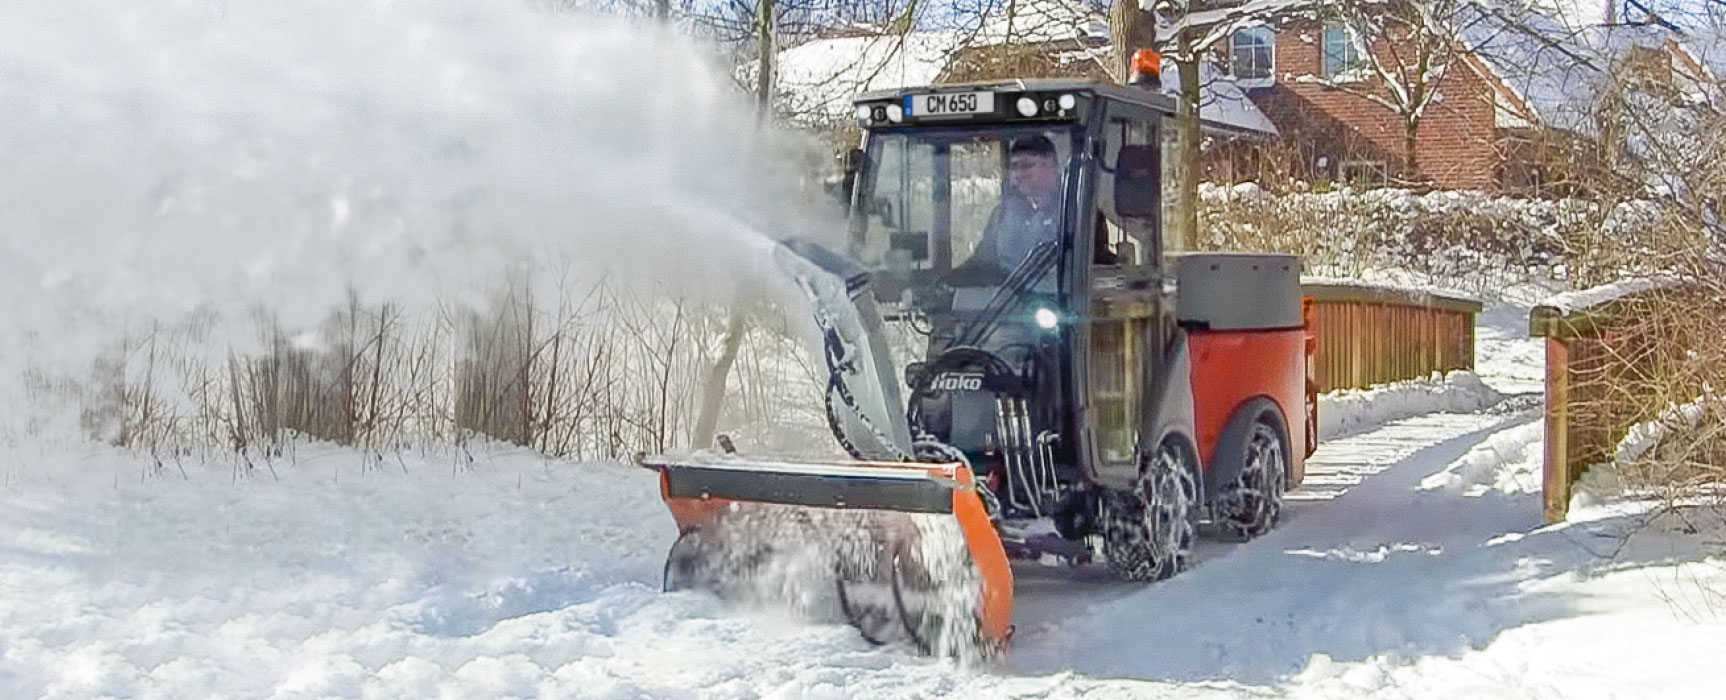 Kommunalfahrzeug bei der Schneeräumung im Winterdienst.